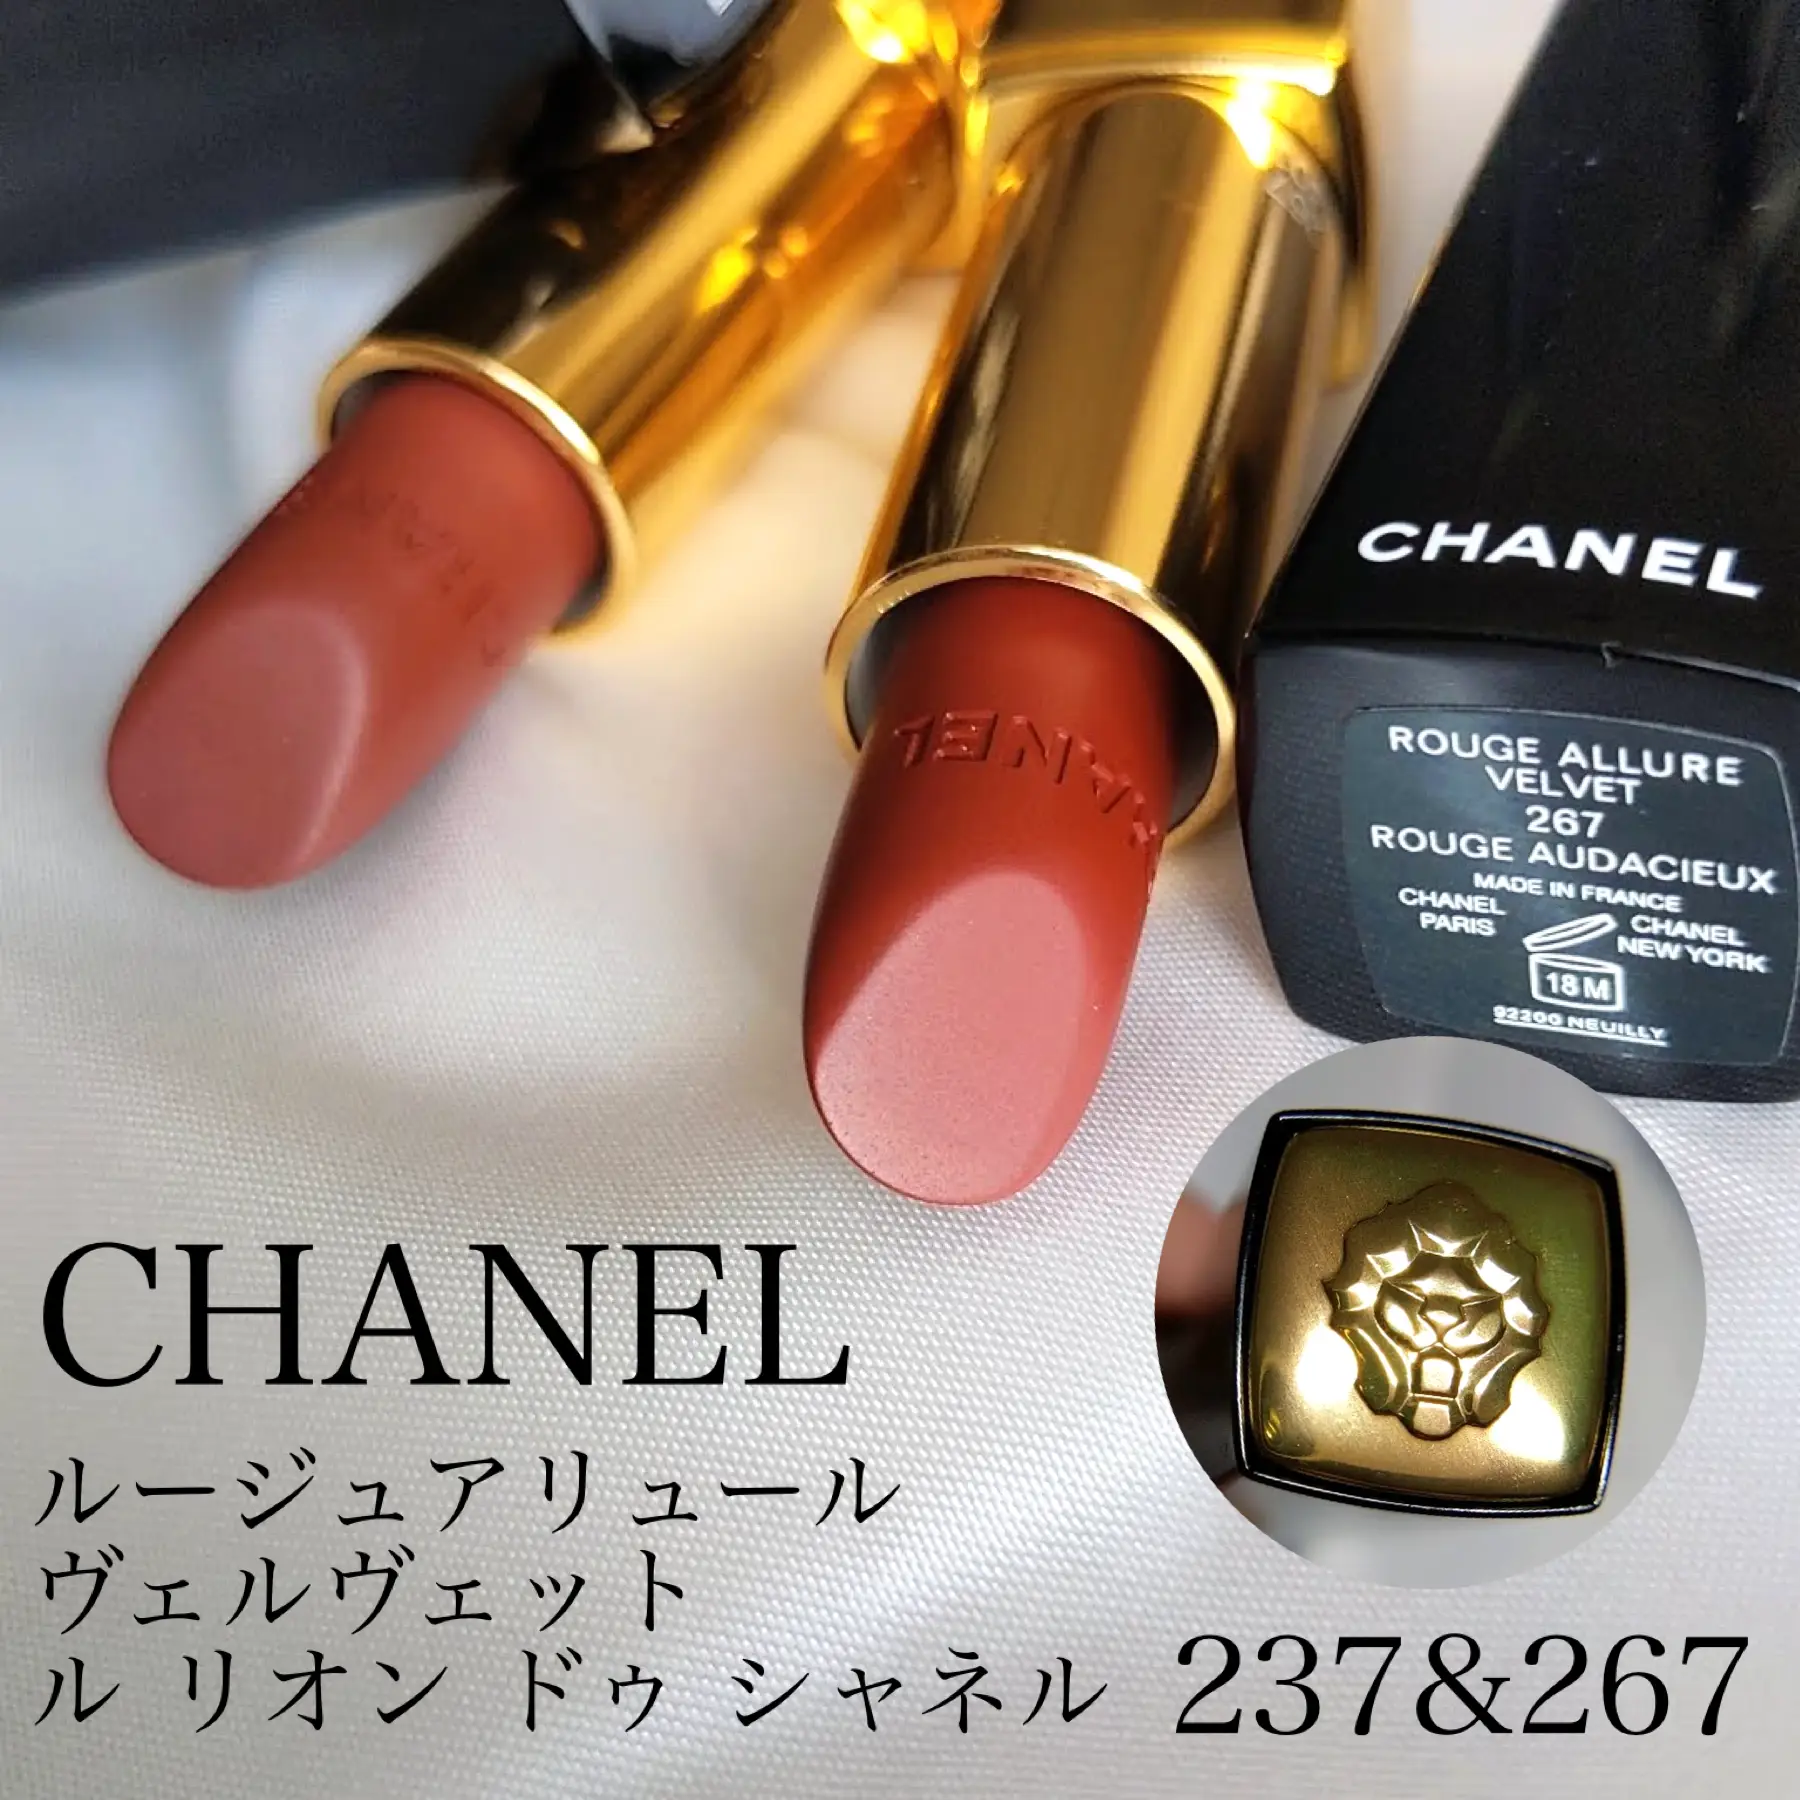 Chanel Rouge Allure Velvet Le Lion de Chanel